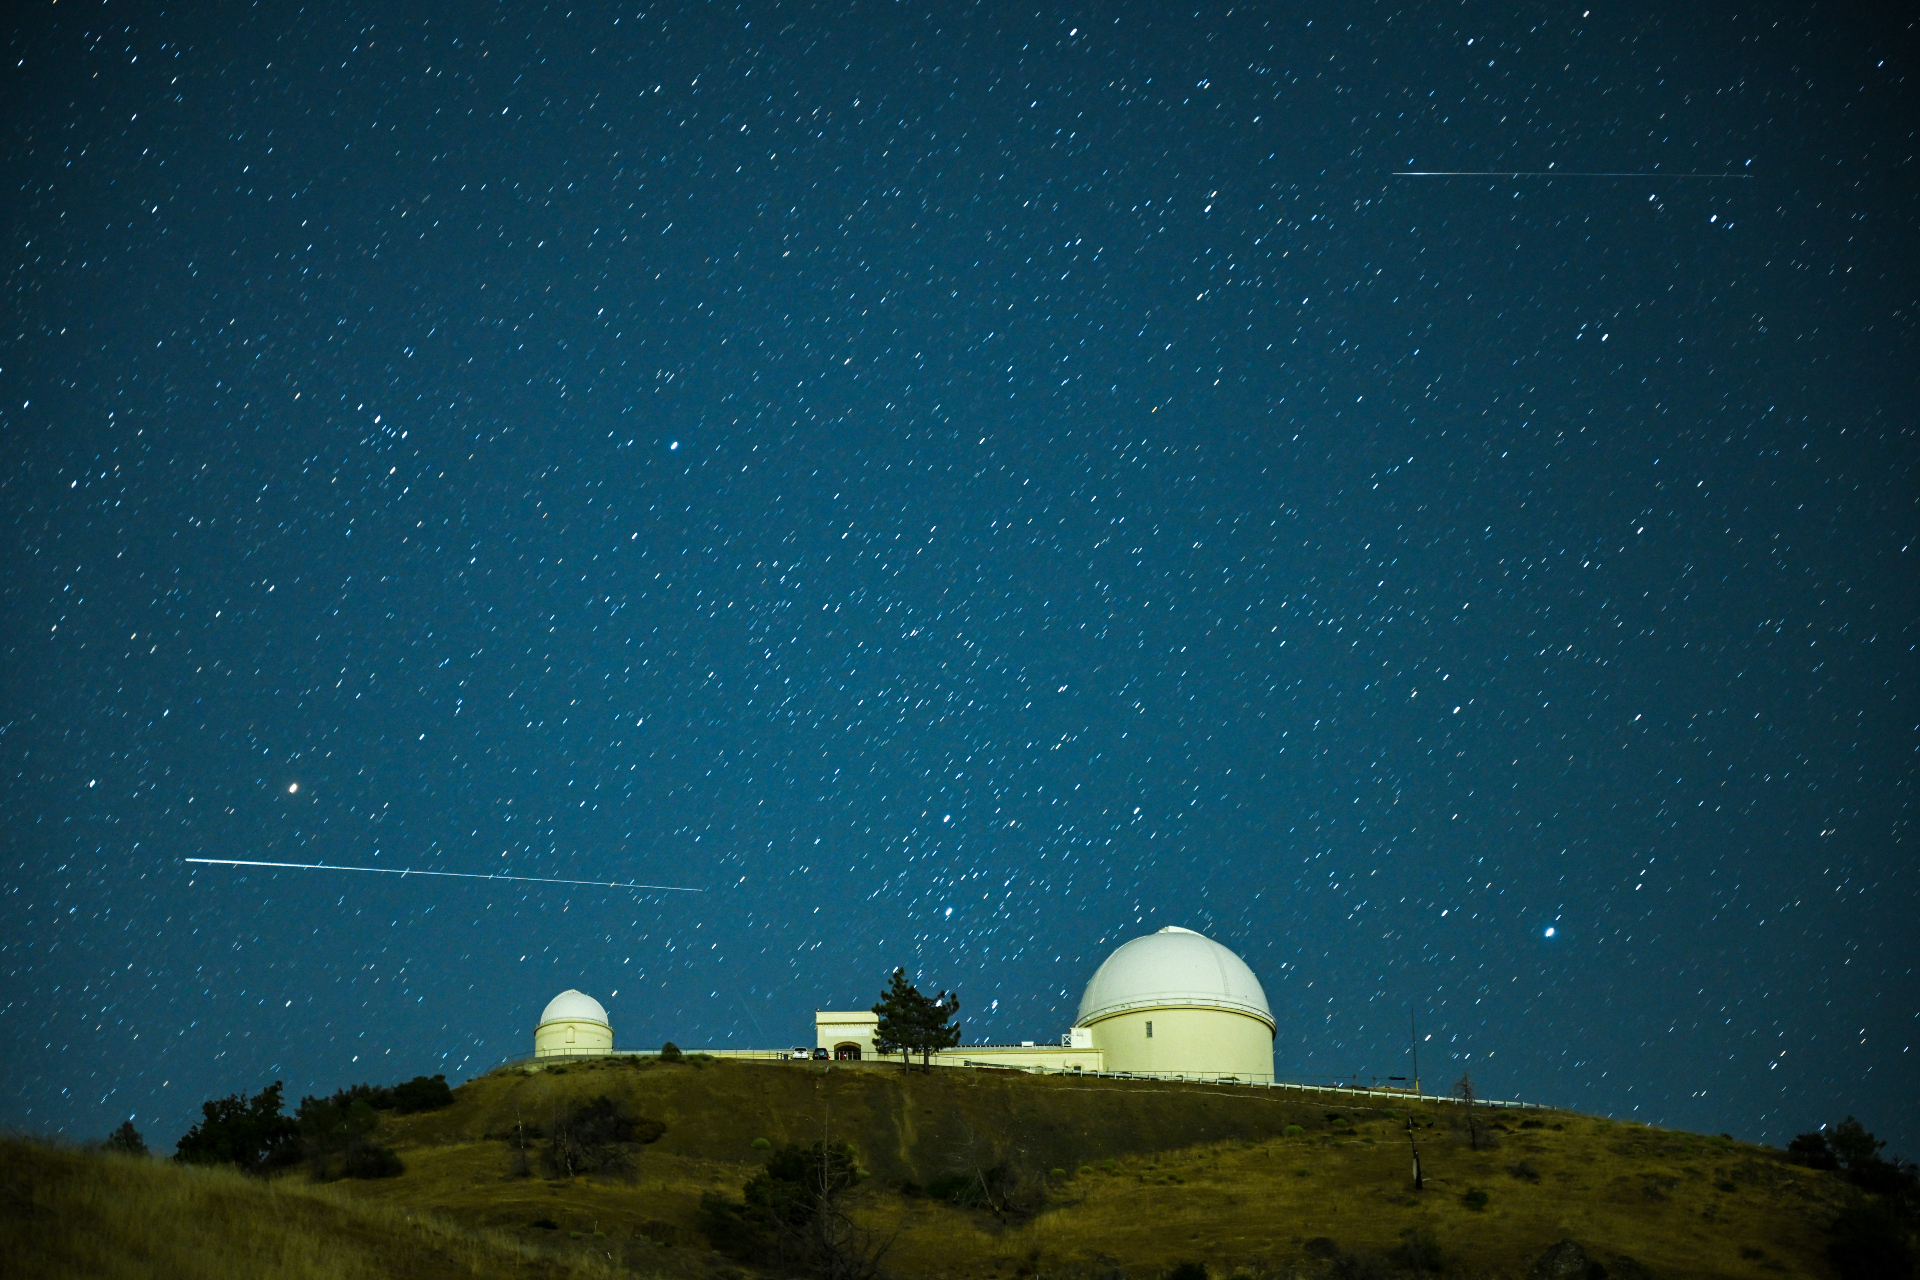 Un long train blanc du météore Perséide passe au-dessus de la structure en forme de dôme de l'Observatoire du lac dans une direction horizontale contre un ciel étoilé.